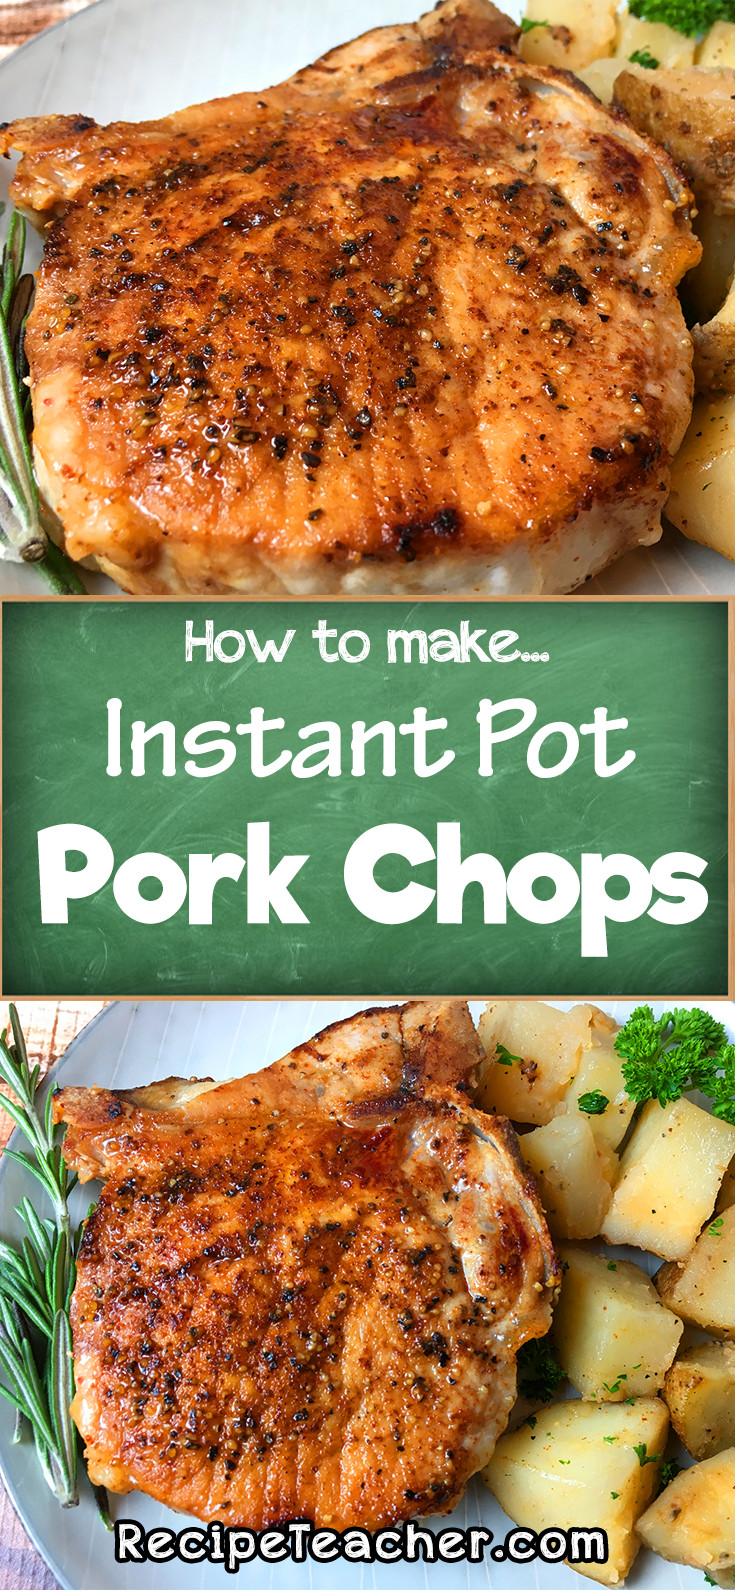 Instant Pot Pork Chops
 Instant Pot Pork Chops RecipeTeacher